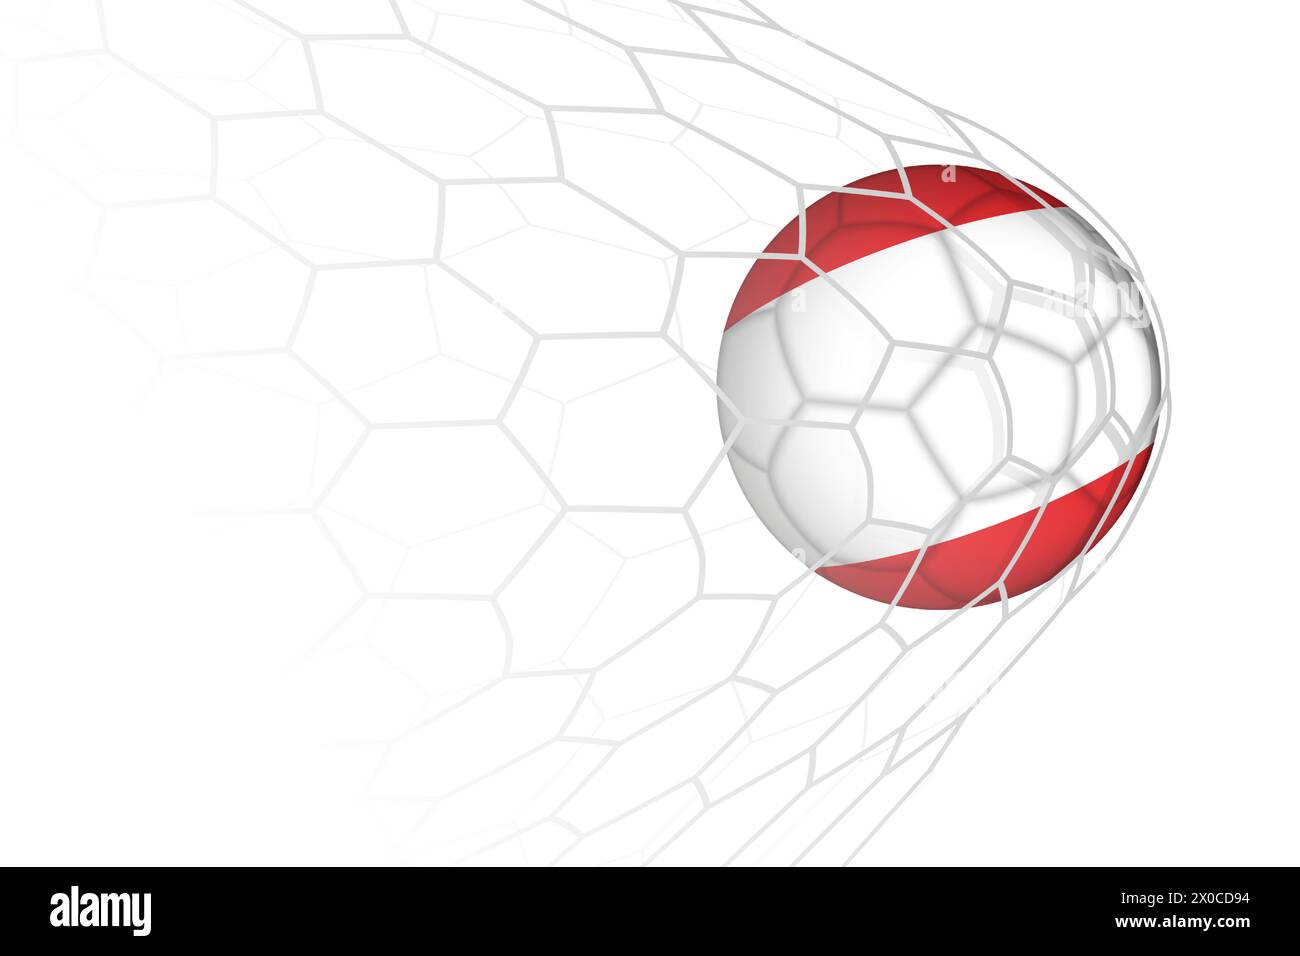 Austria flag soccer ball in net. Vector sport illustration. Stock Vector